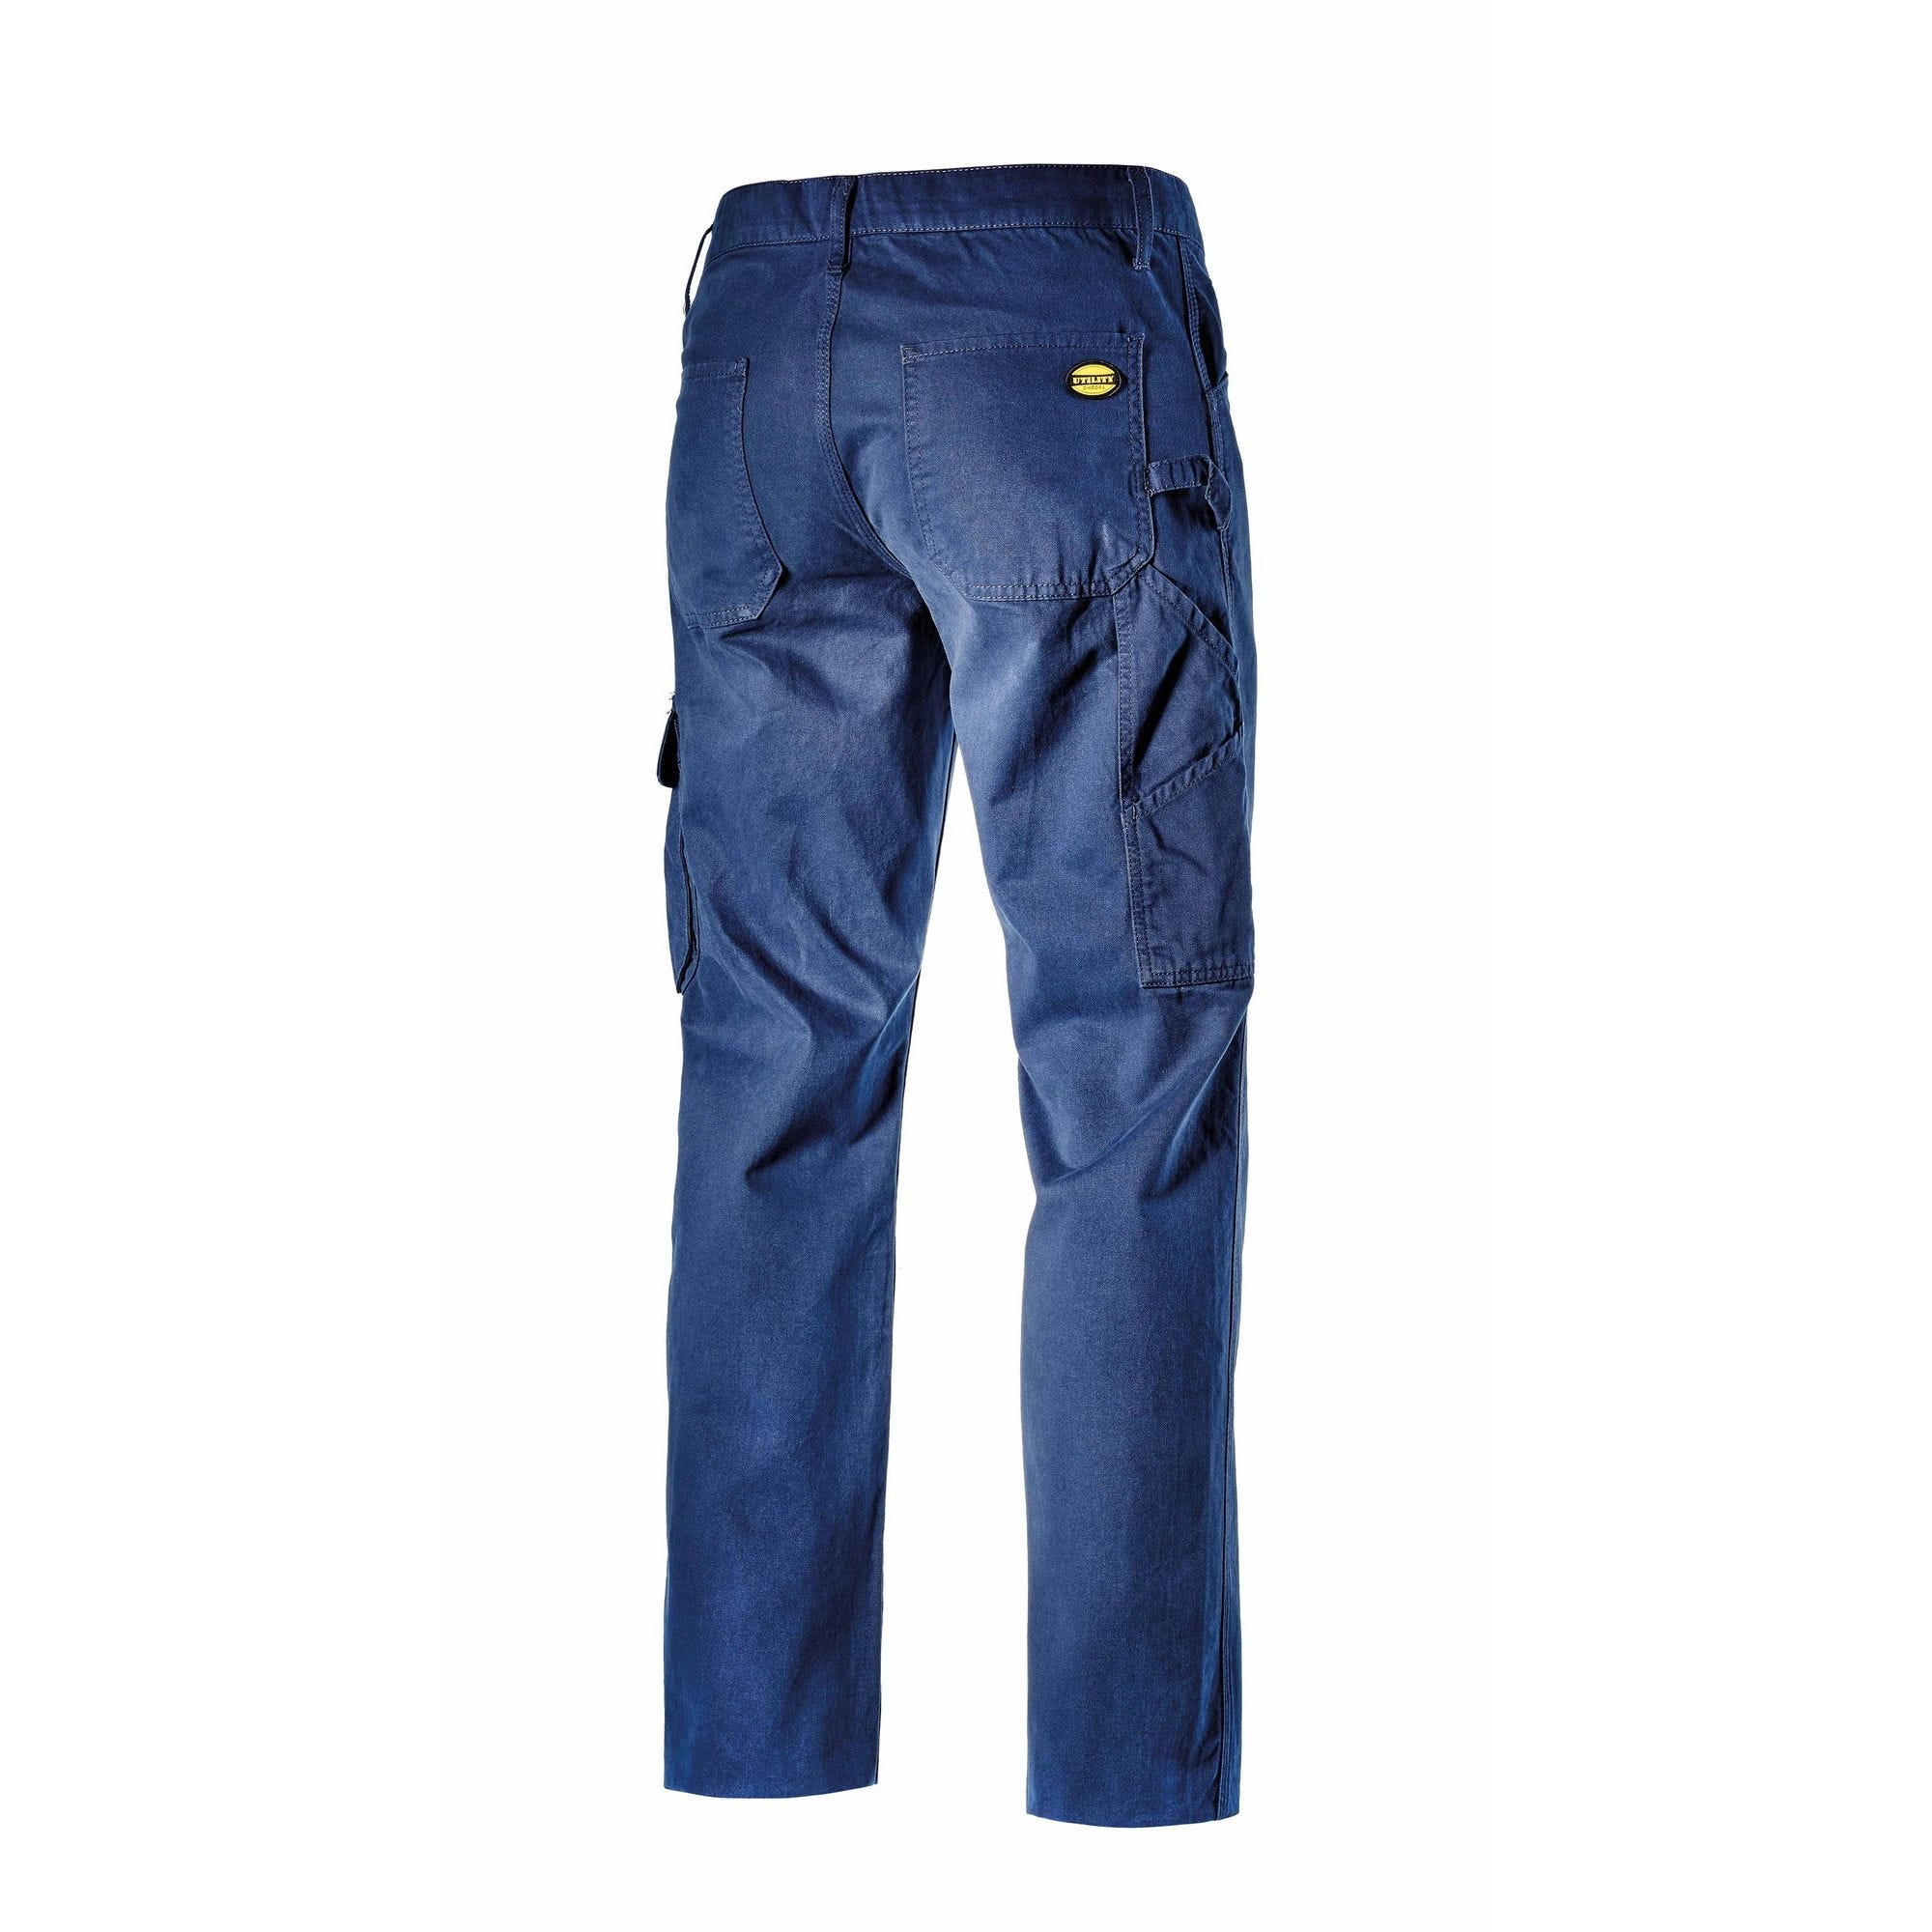 Pantalon de travail TRADE ISO poudre bleu T3XL - DIADORA SPA - 702.159630.3XL 60064 1